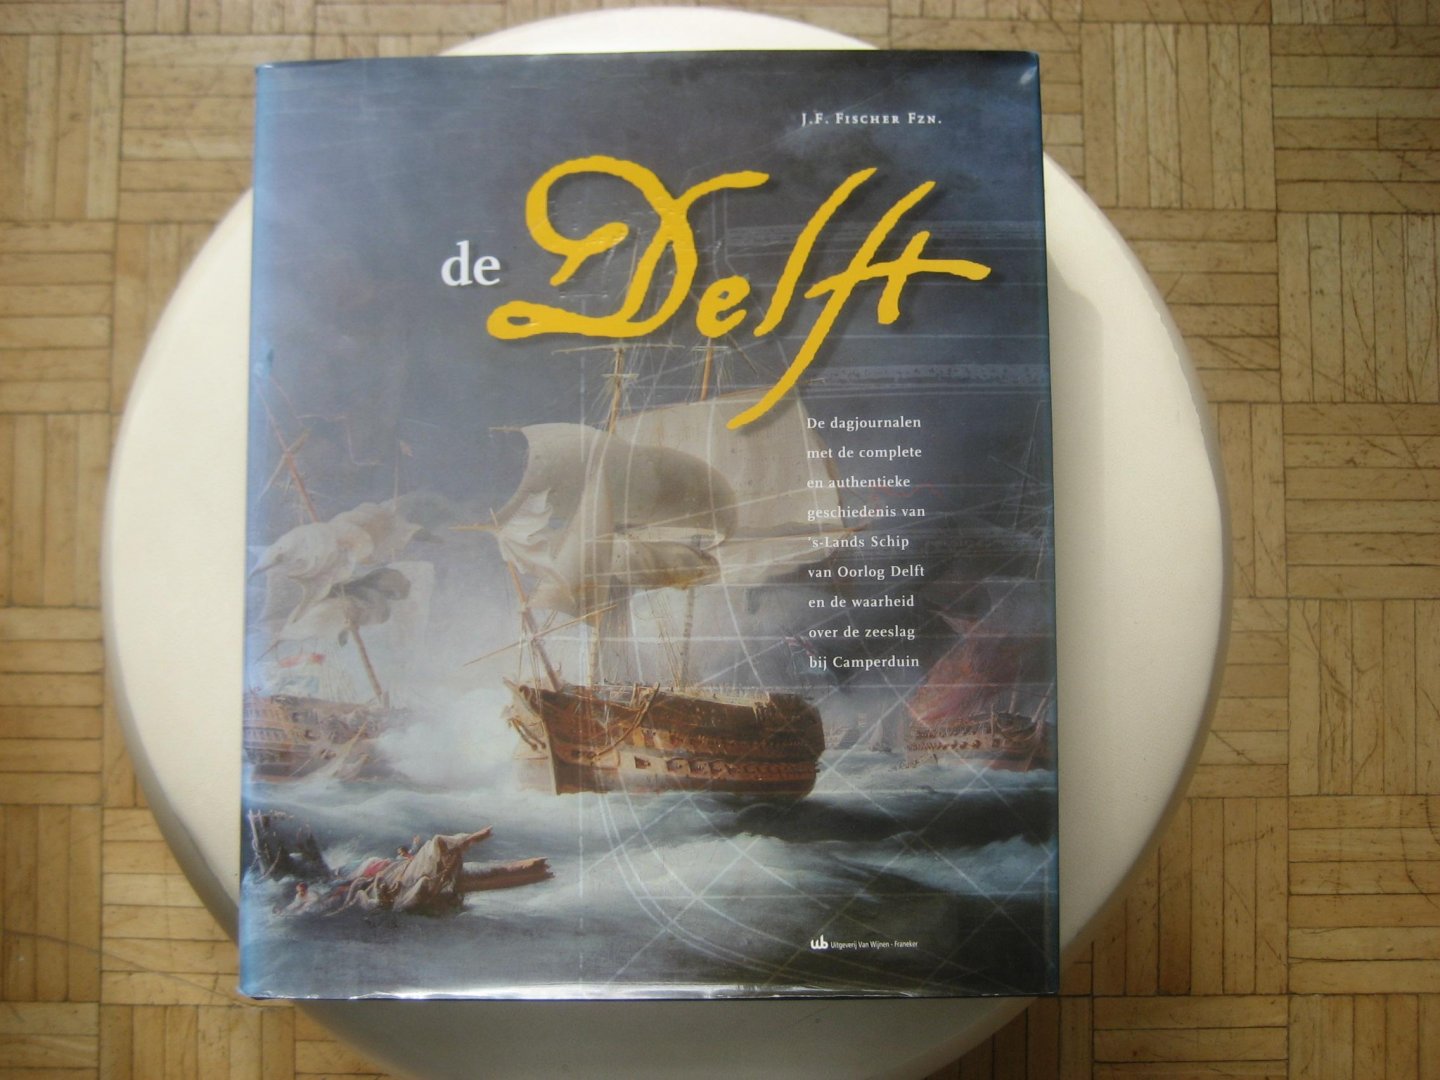 J.F. Fischer Fzn - DE DELFT / De dagjournalen en geschiedenis van 's-Lands Schip van Oorlog Delft- Camperduin